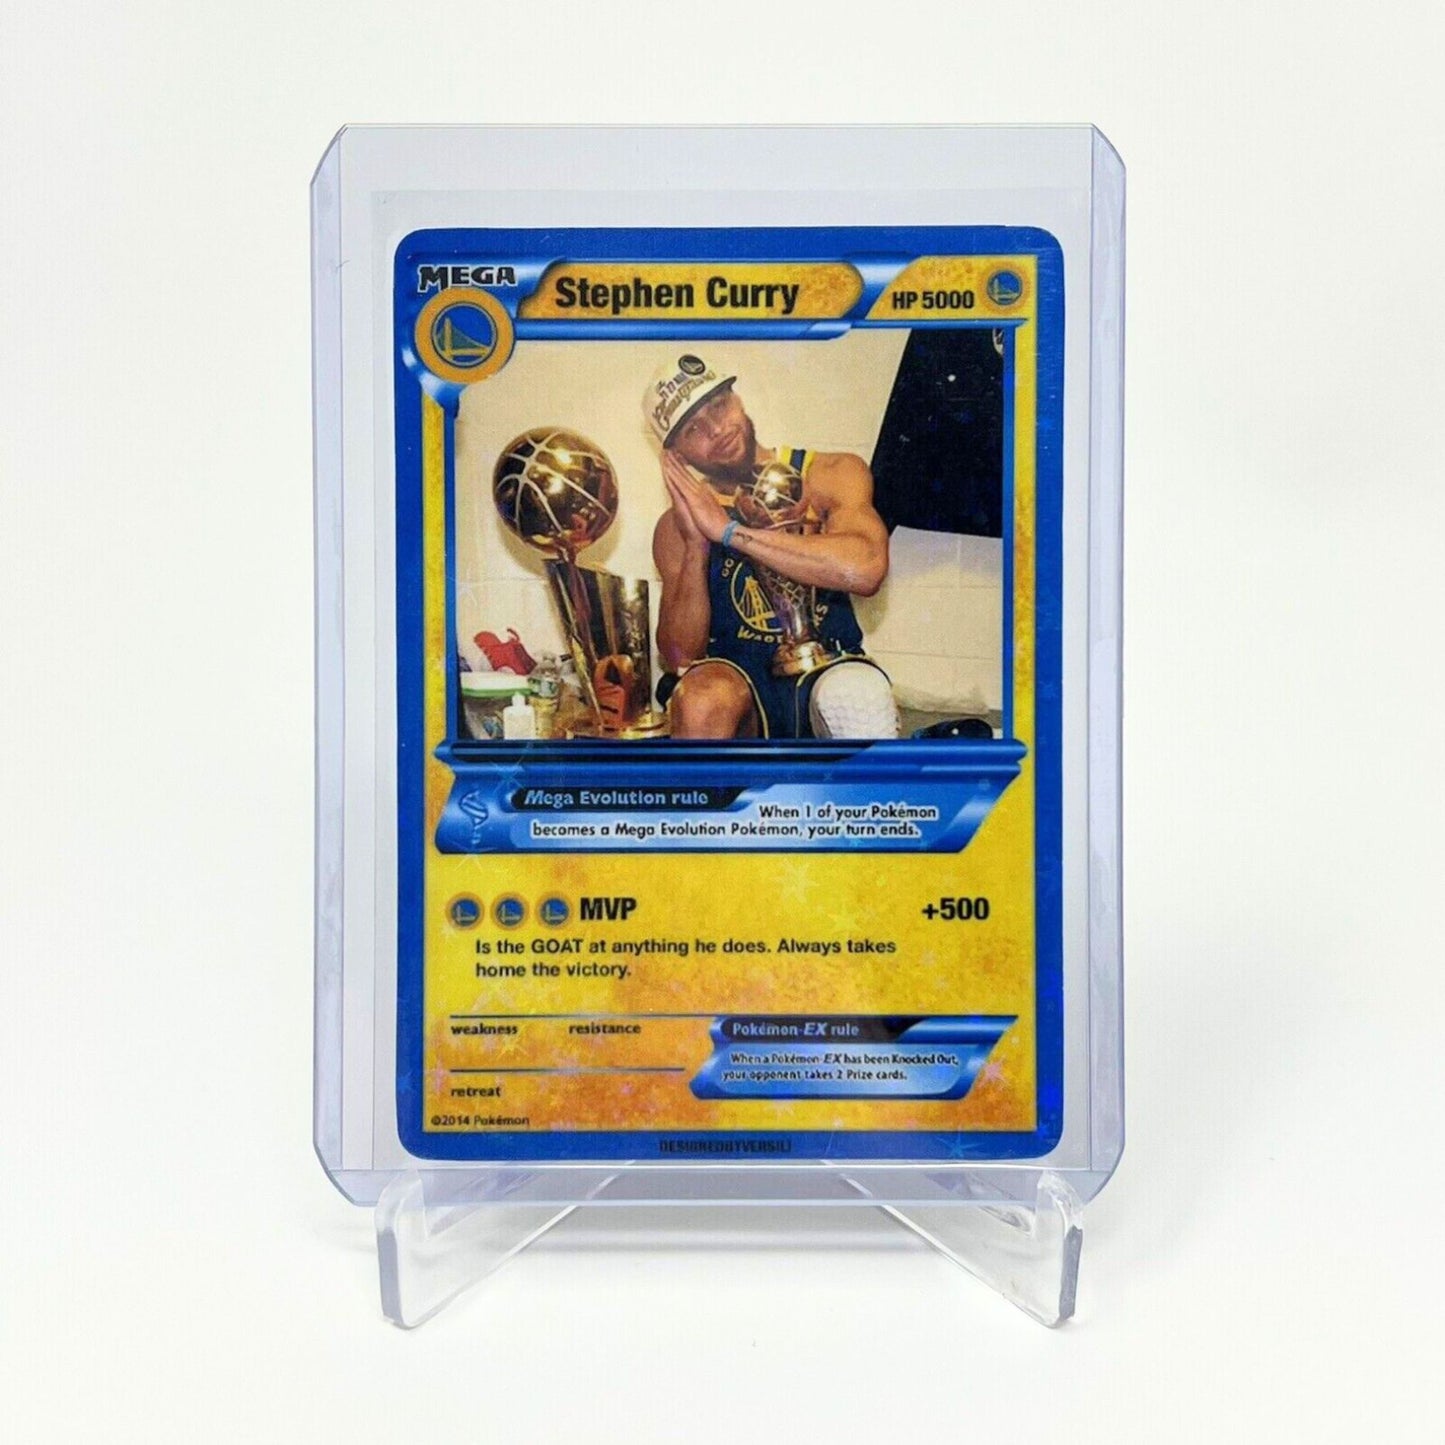 Stephen Curry Pokémon Card